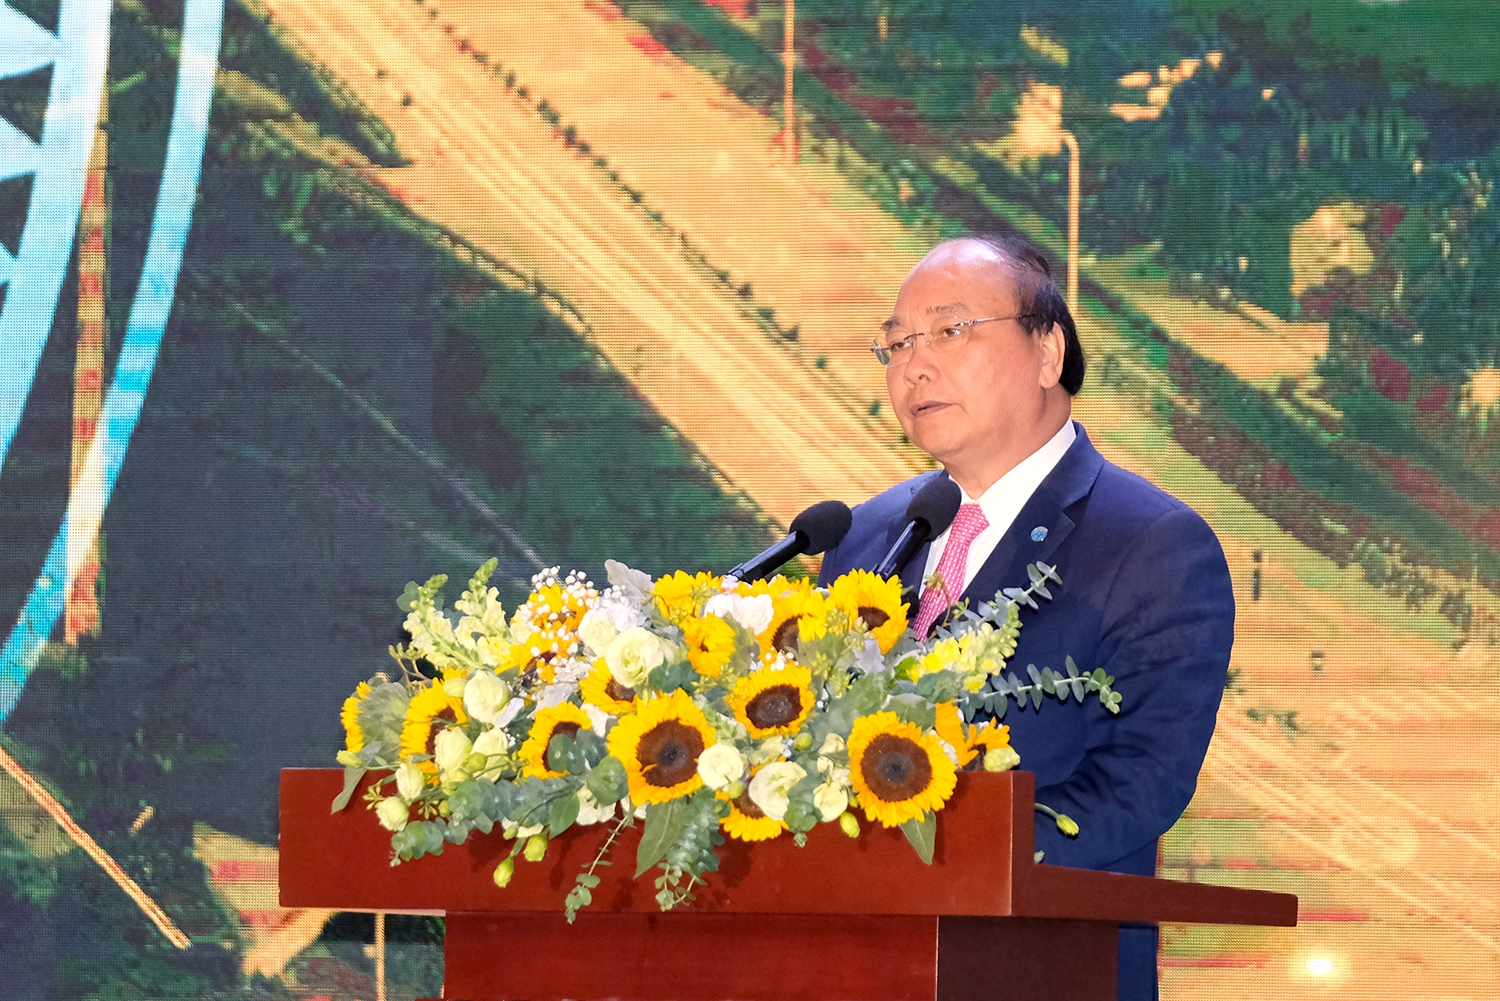 Thủ tướng muốn Hà Nội được nhắc đến với câu “Hà Nội, không vội không xong”